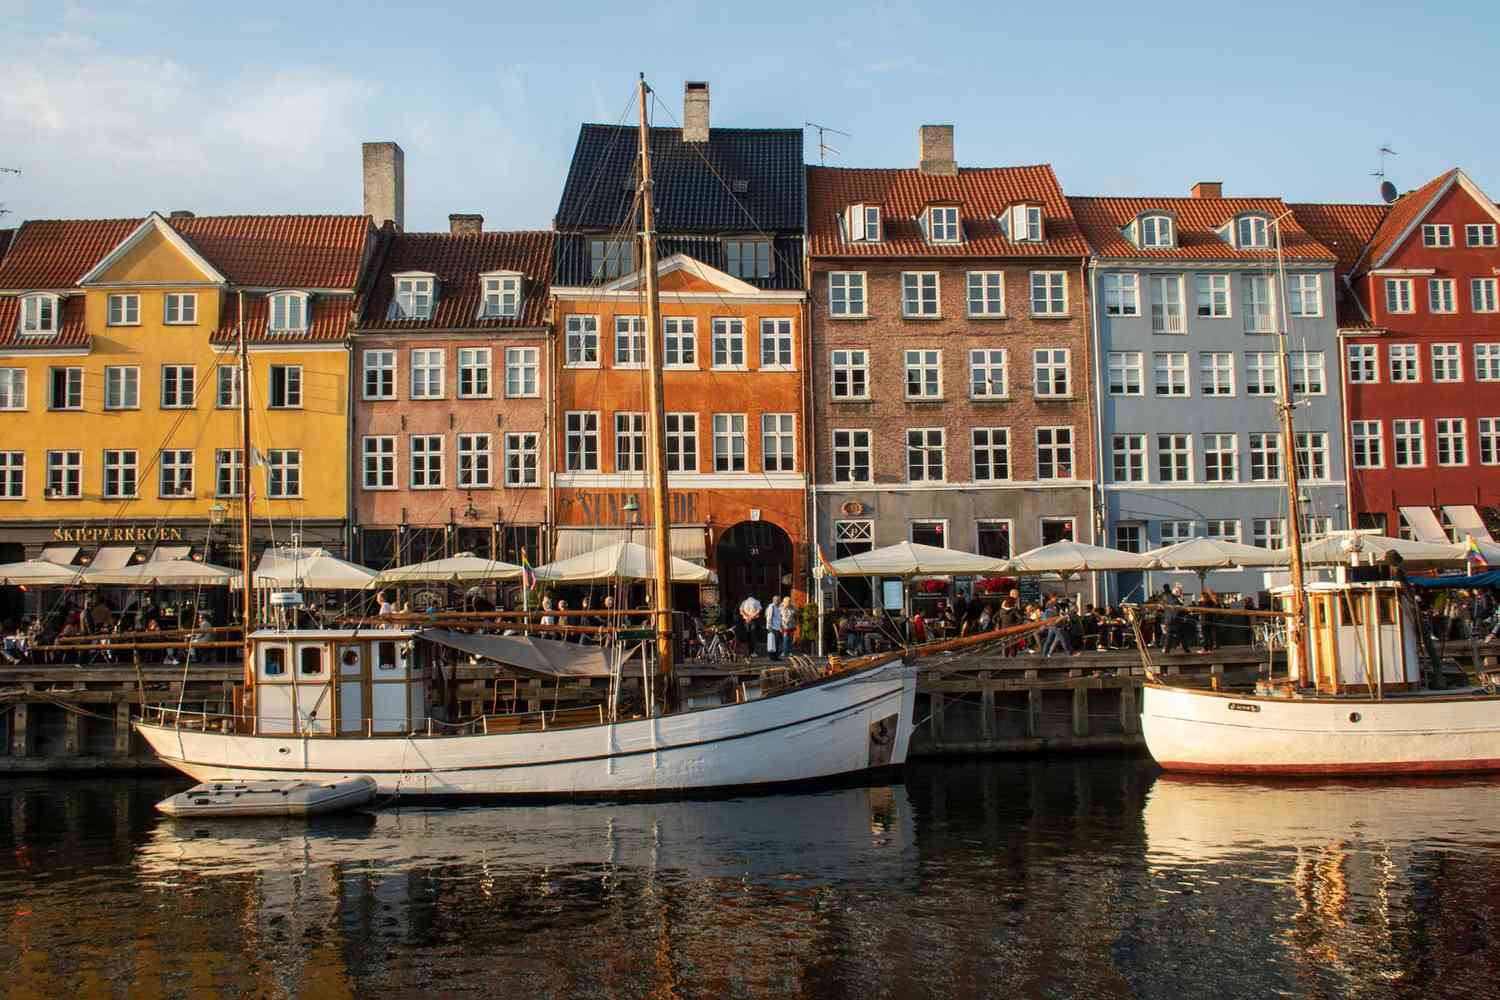 Quartier de Nyhavn à Copenhague, Danemark